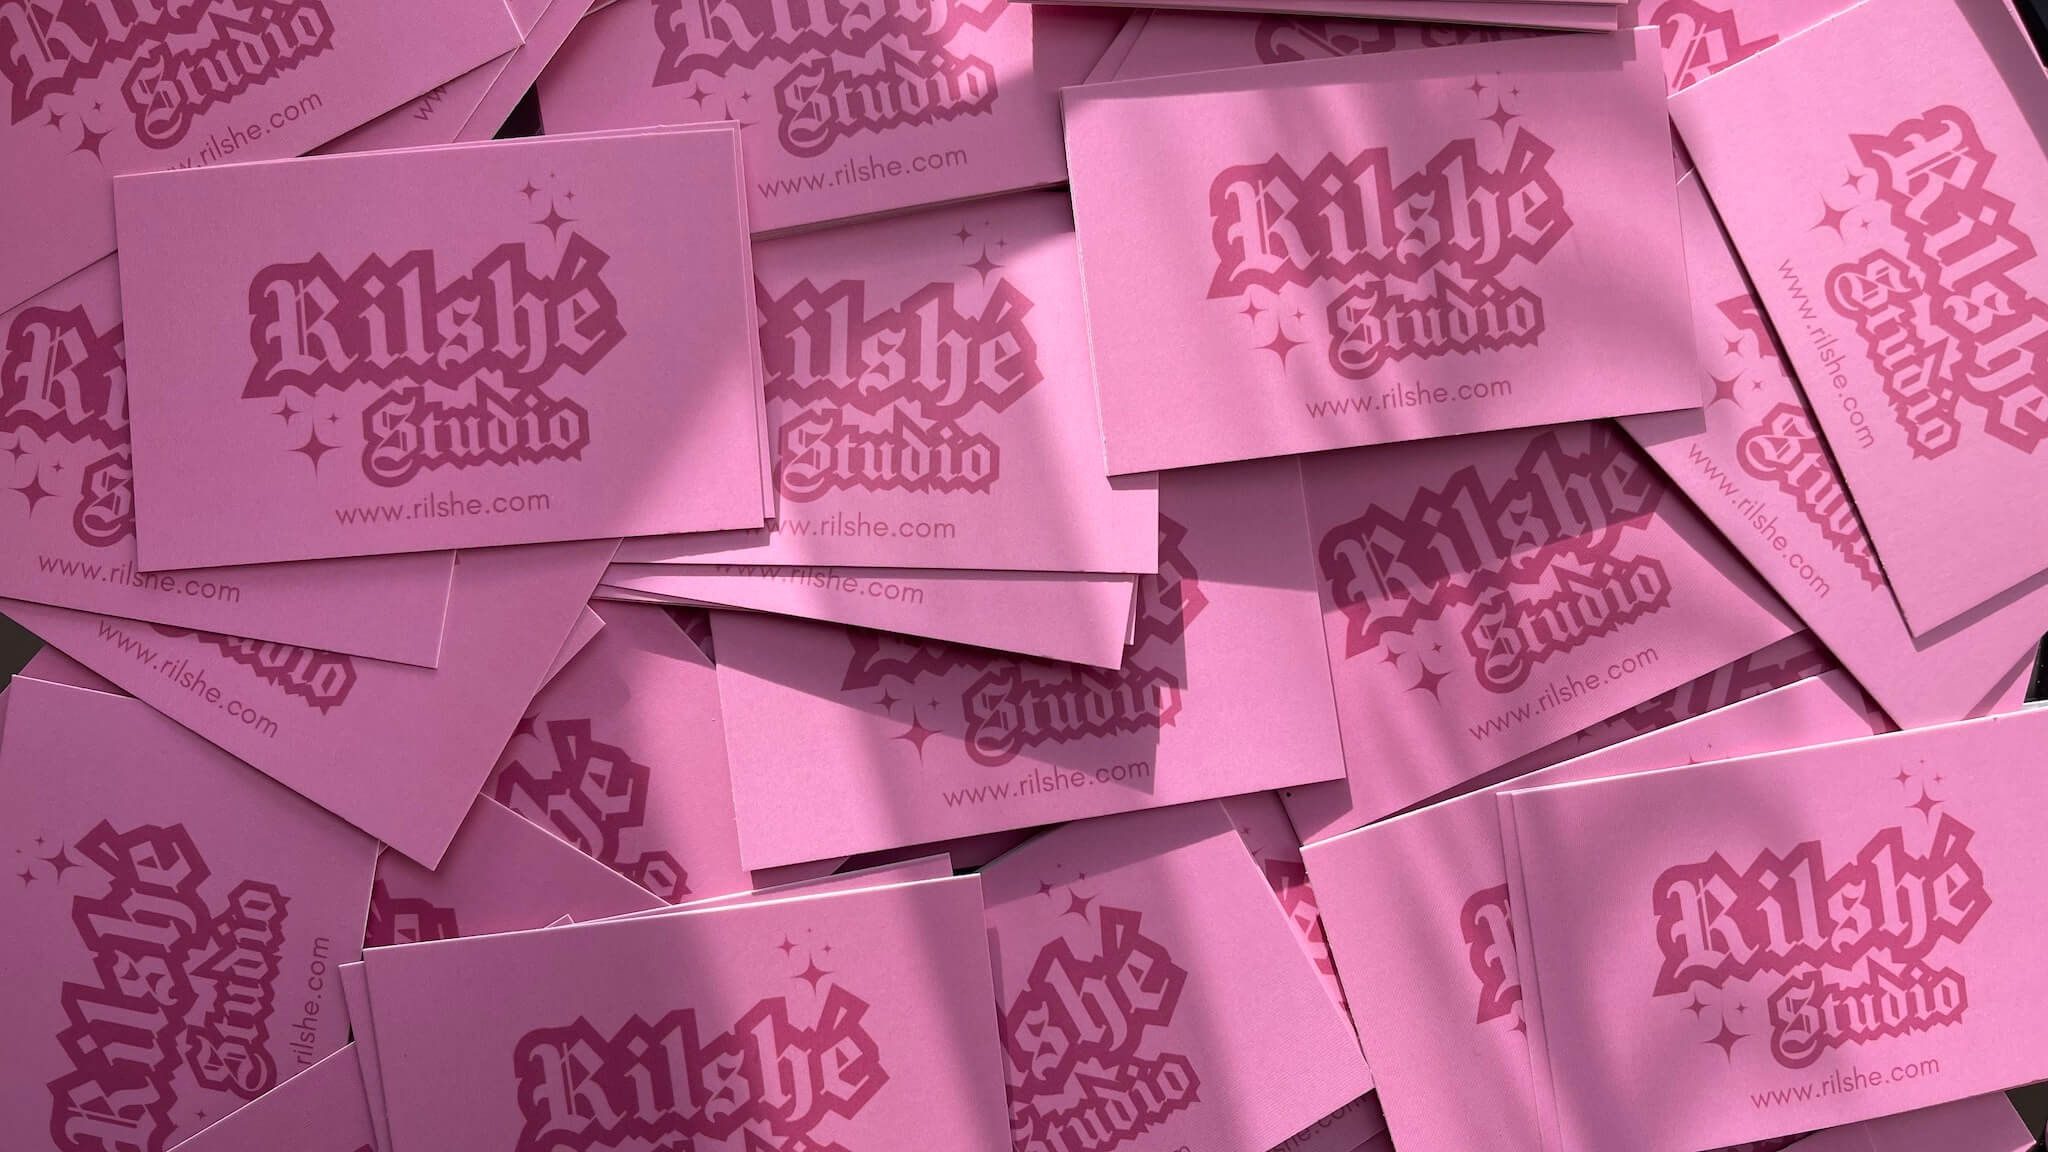 Plusieurs cartes de visite roses de Rilshé disposées en tas